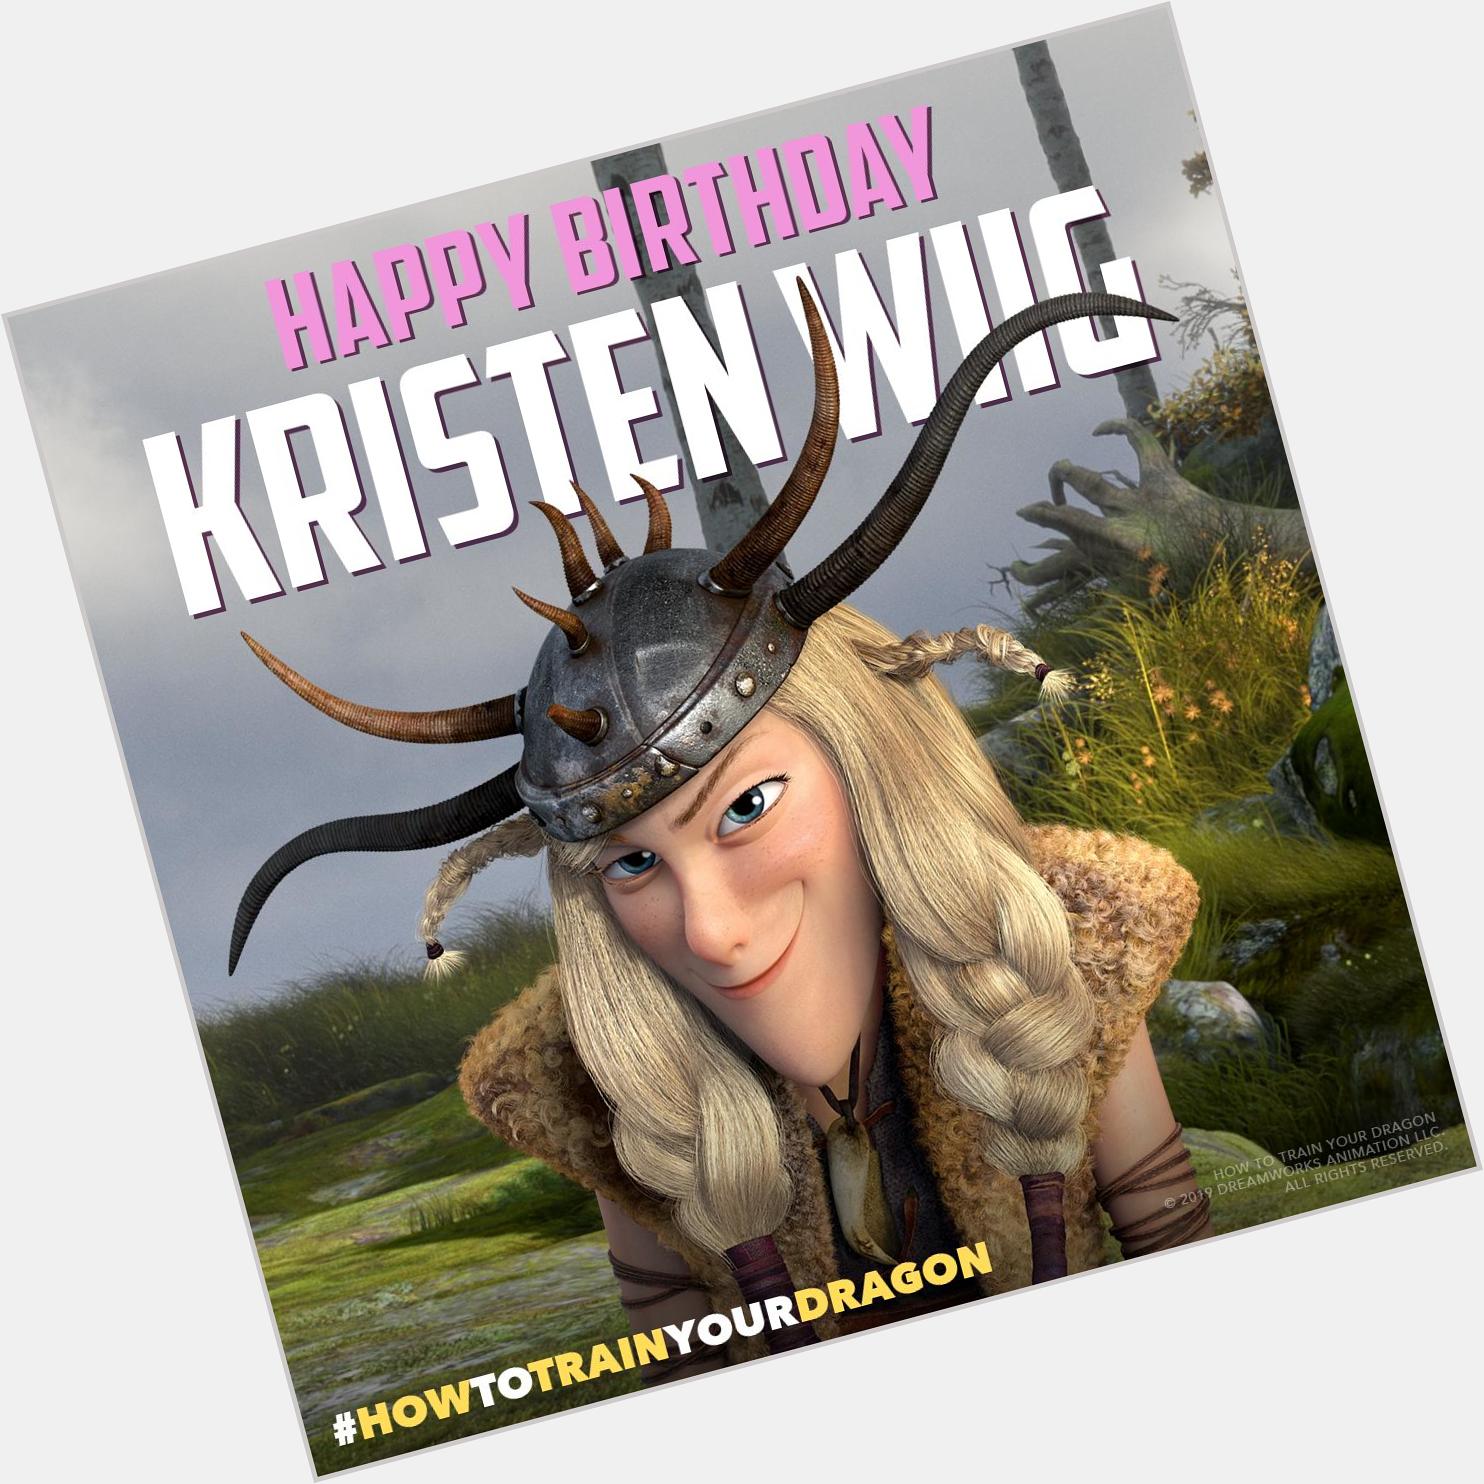 She s a little Ruff around the edges, but we still love her! Happy birthday, Kristen Wiig! 